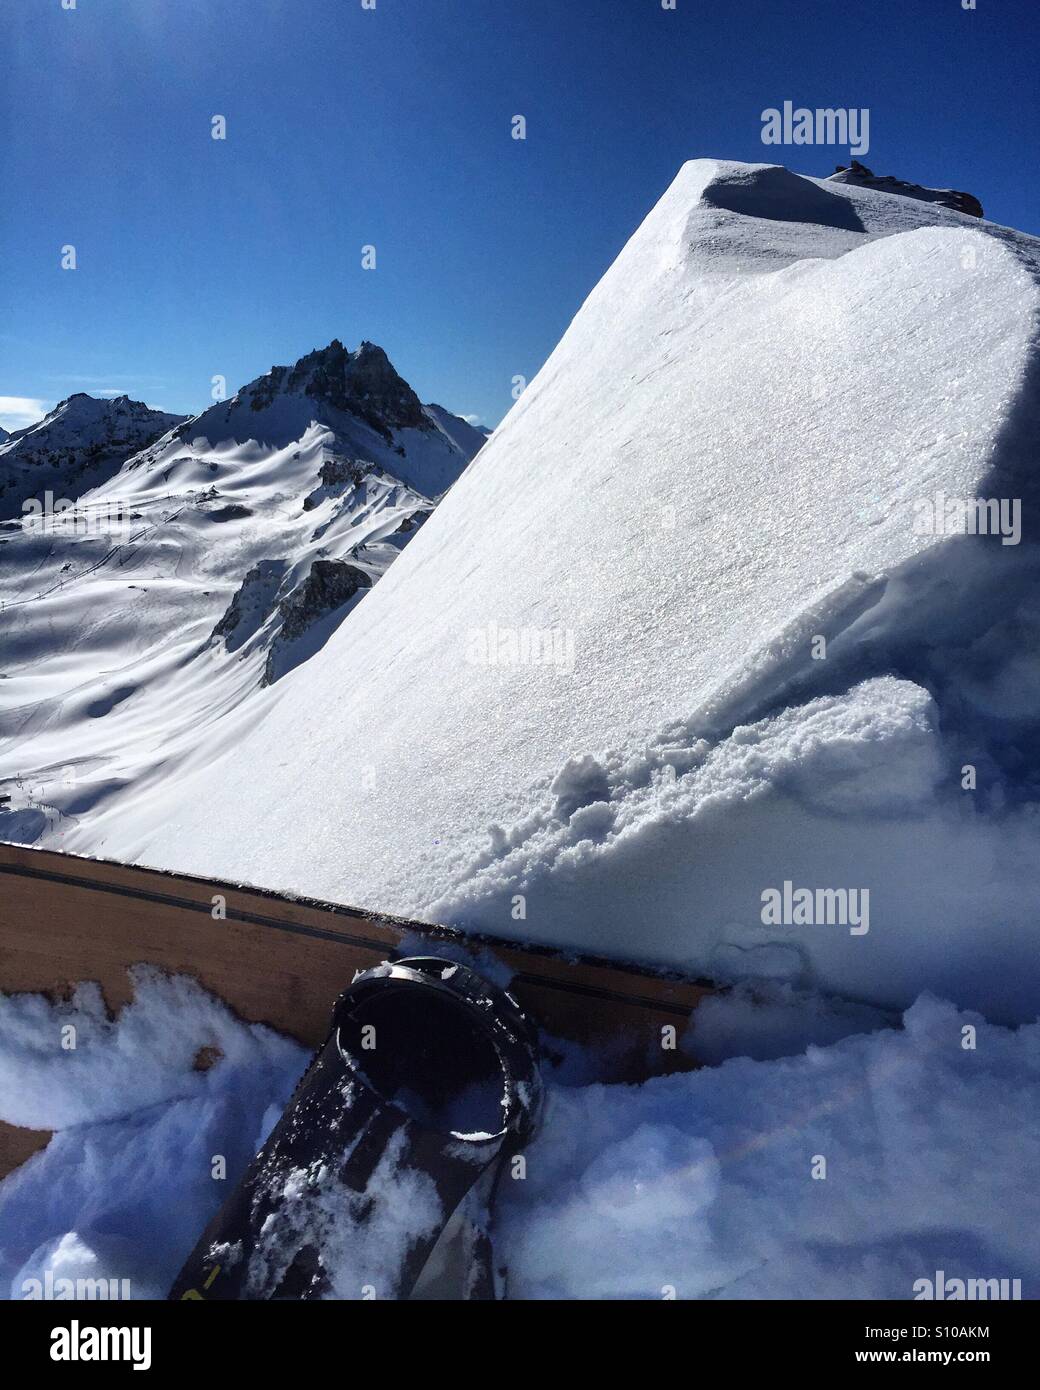 La scalata verso la cima di una montagna con uno scarpone da snowboard. Grimentz, Svizzera. Foto Stock